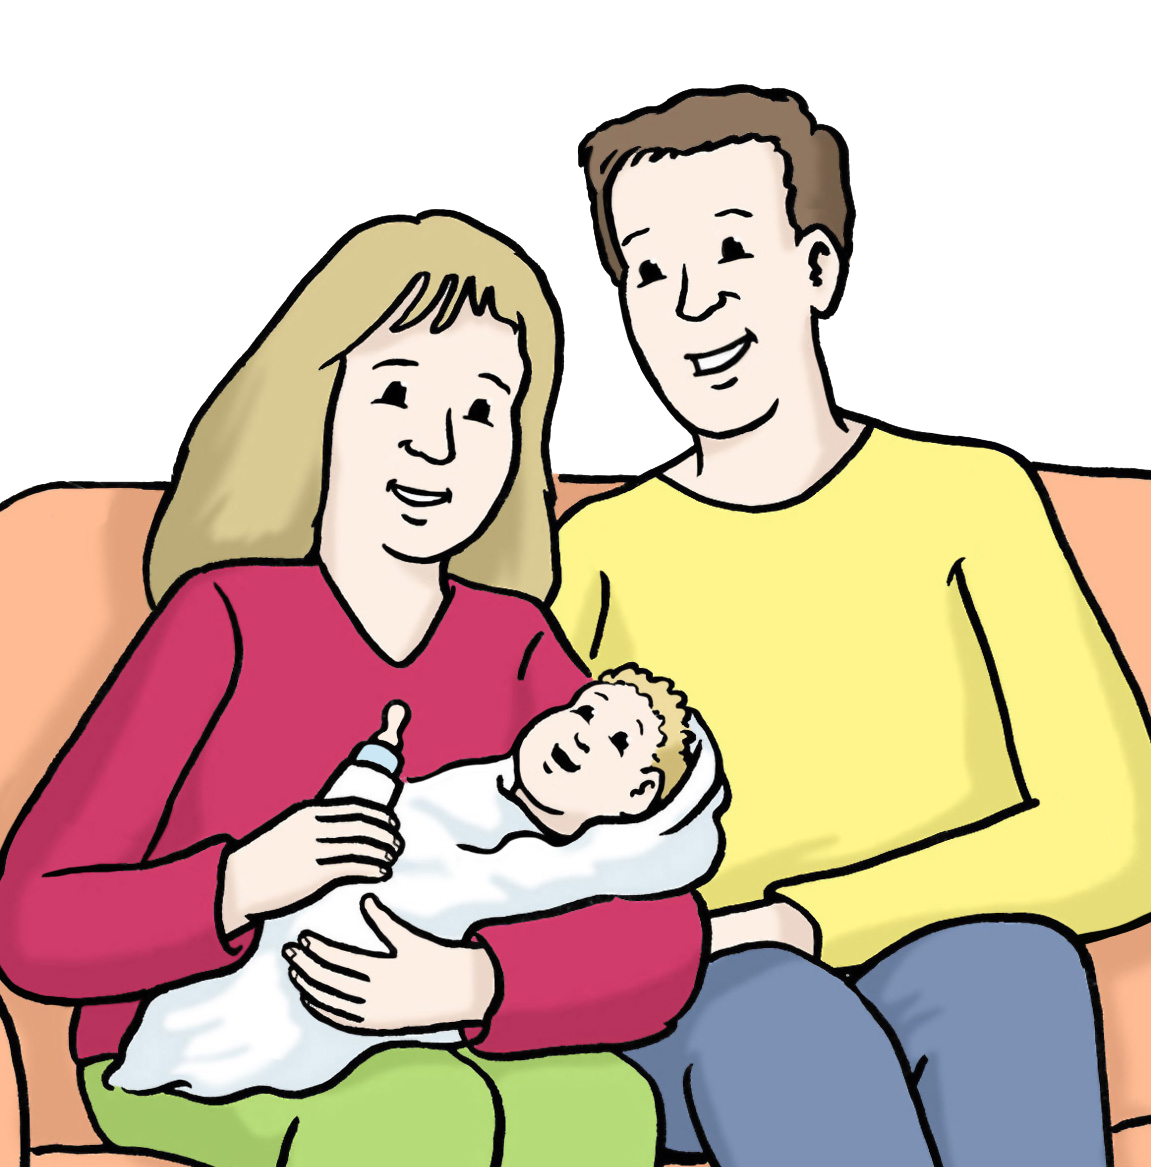 Grafik: Frau und Mann sitzen auf einem Sofa. Die Frau hält ein Baby im Arm.